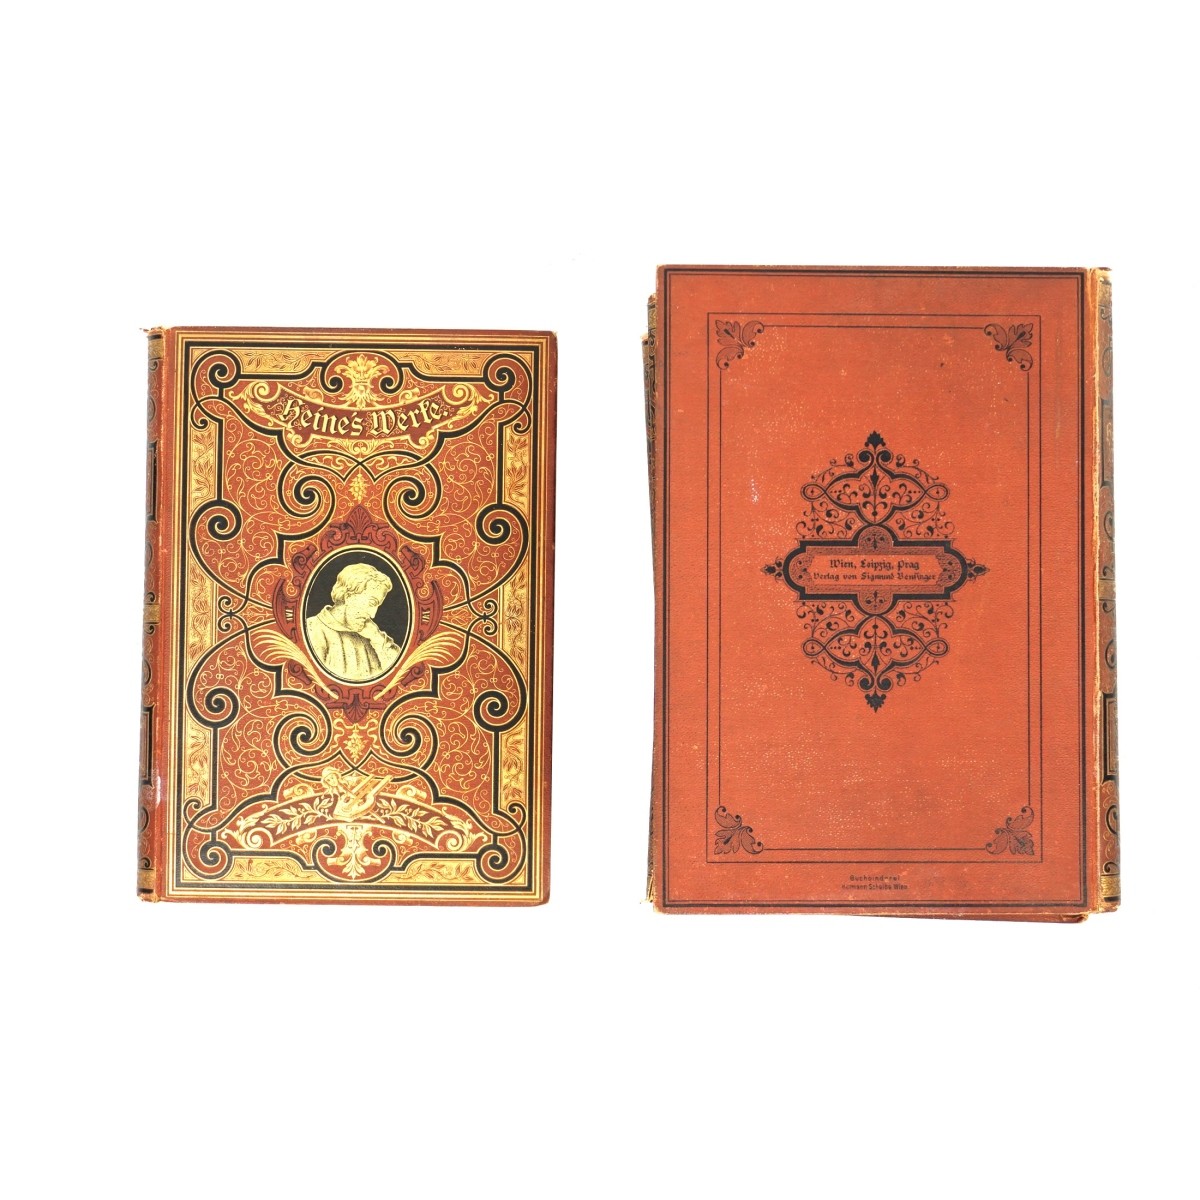 Heinrich Heine's Hardcover Books